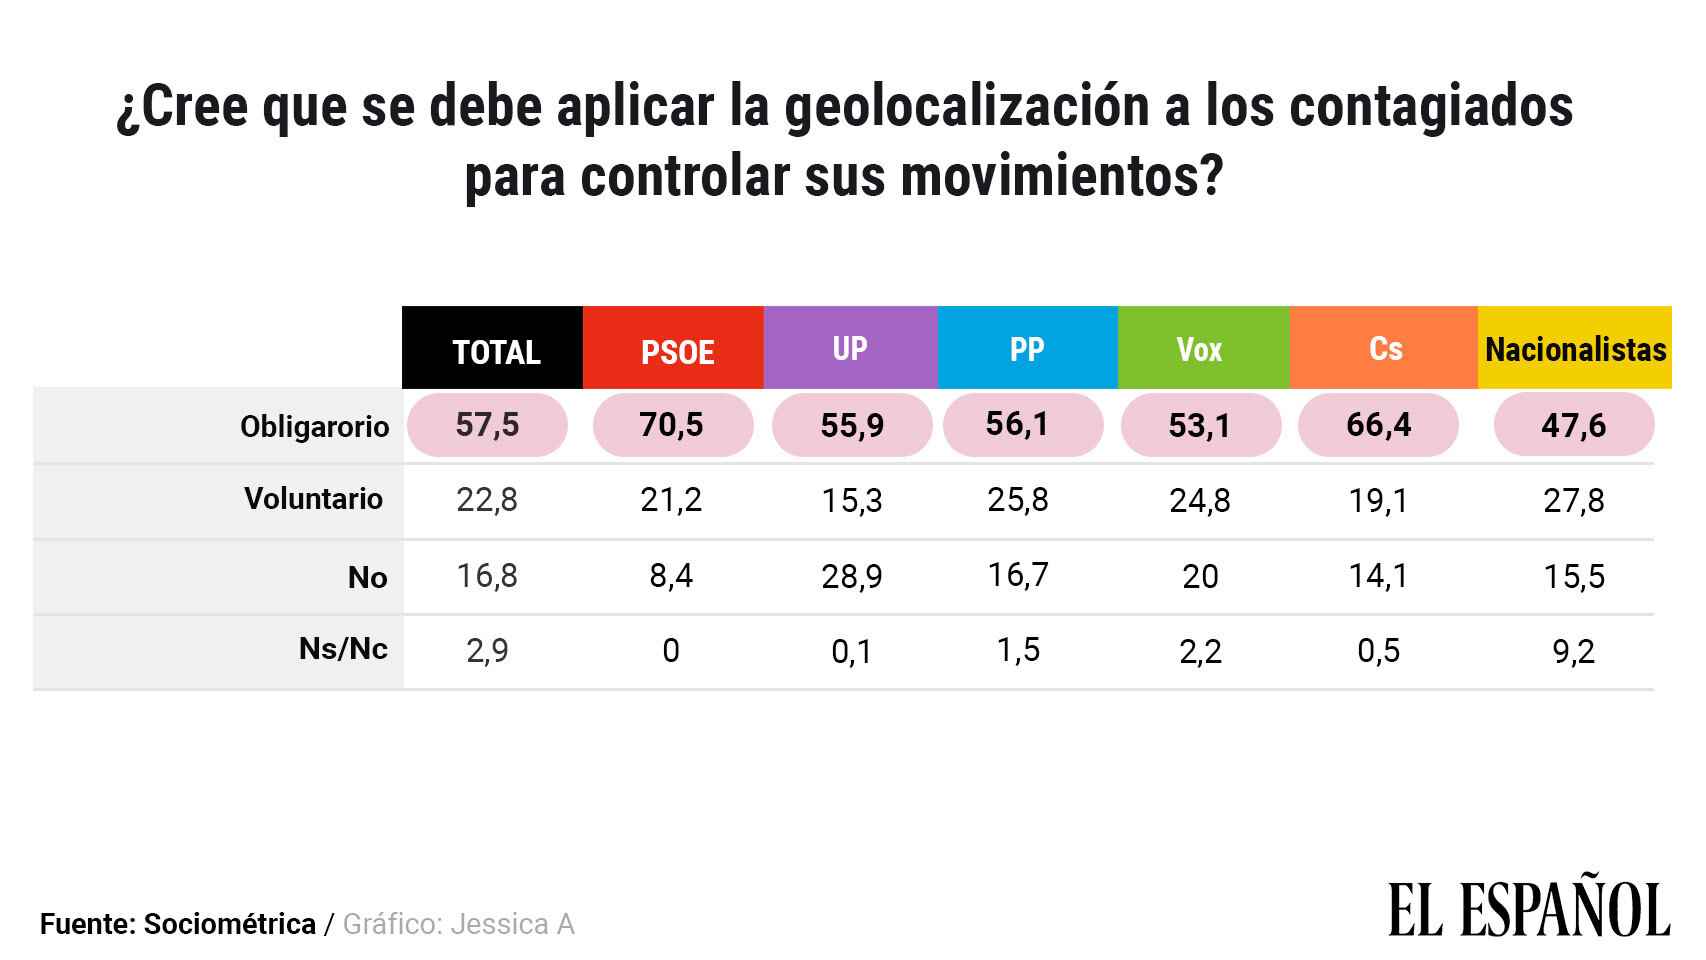 La geolocalización según intención de voto.